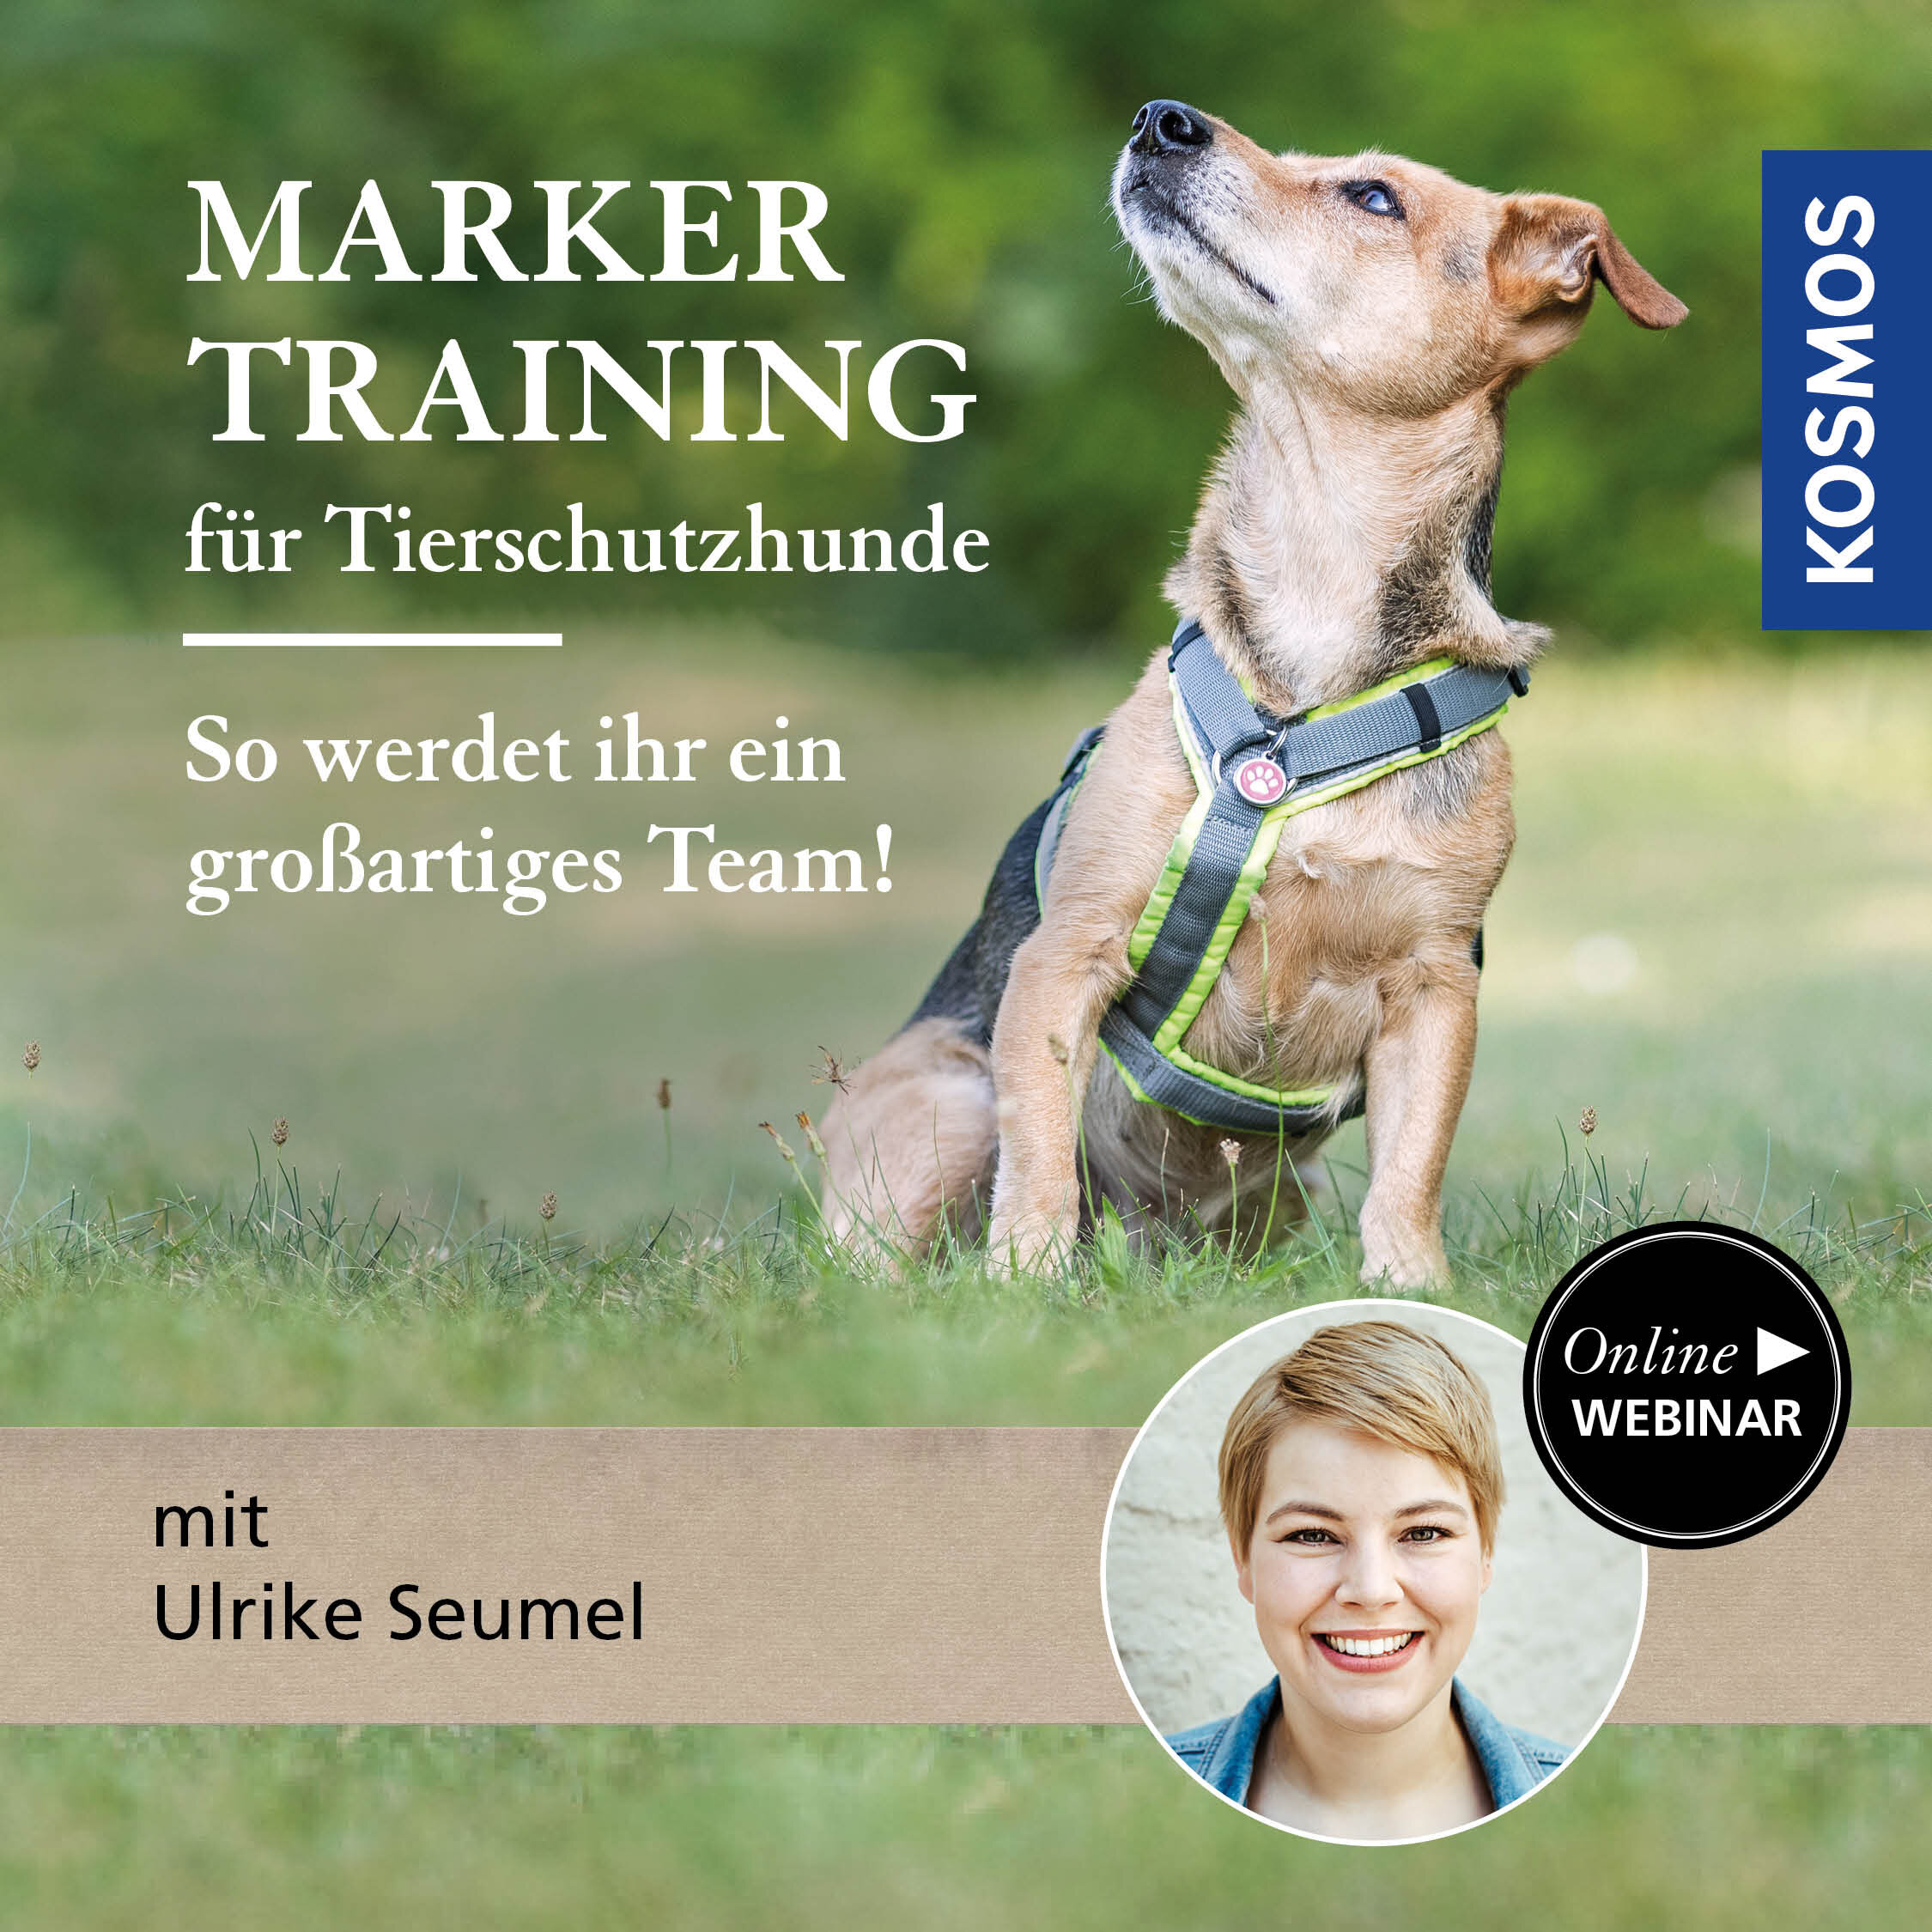 Markertraining für Tierschutzhunde – So werdet ihr ein großartiges Team!